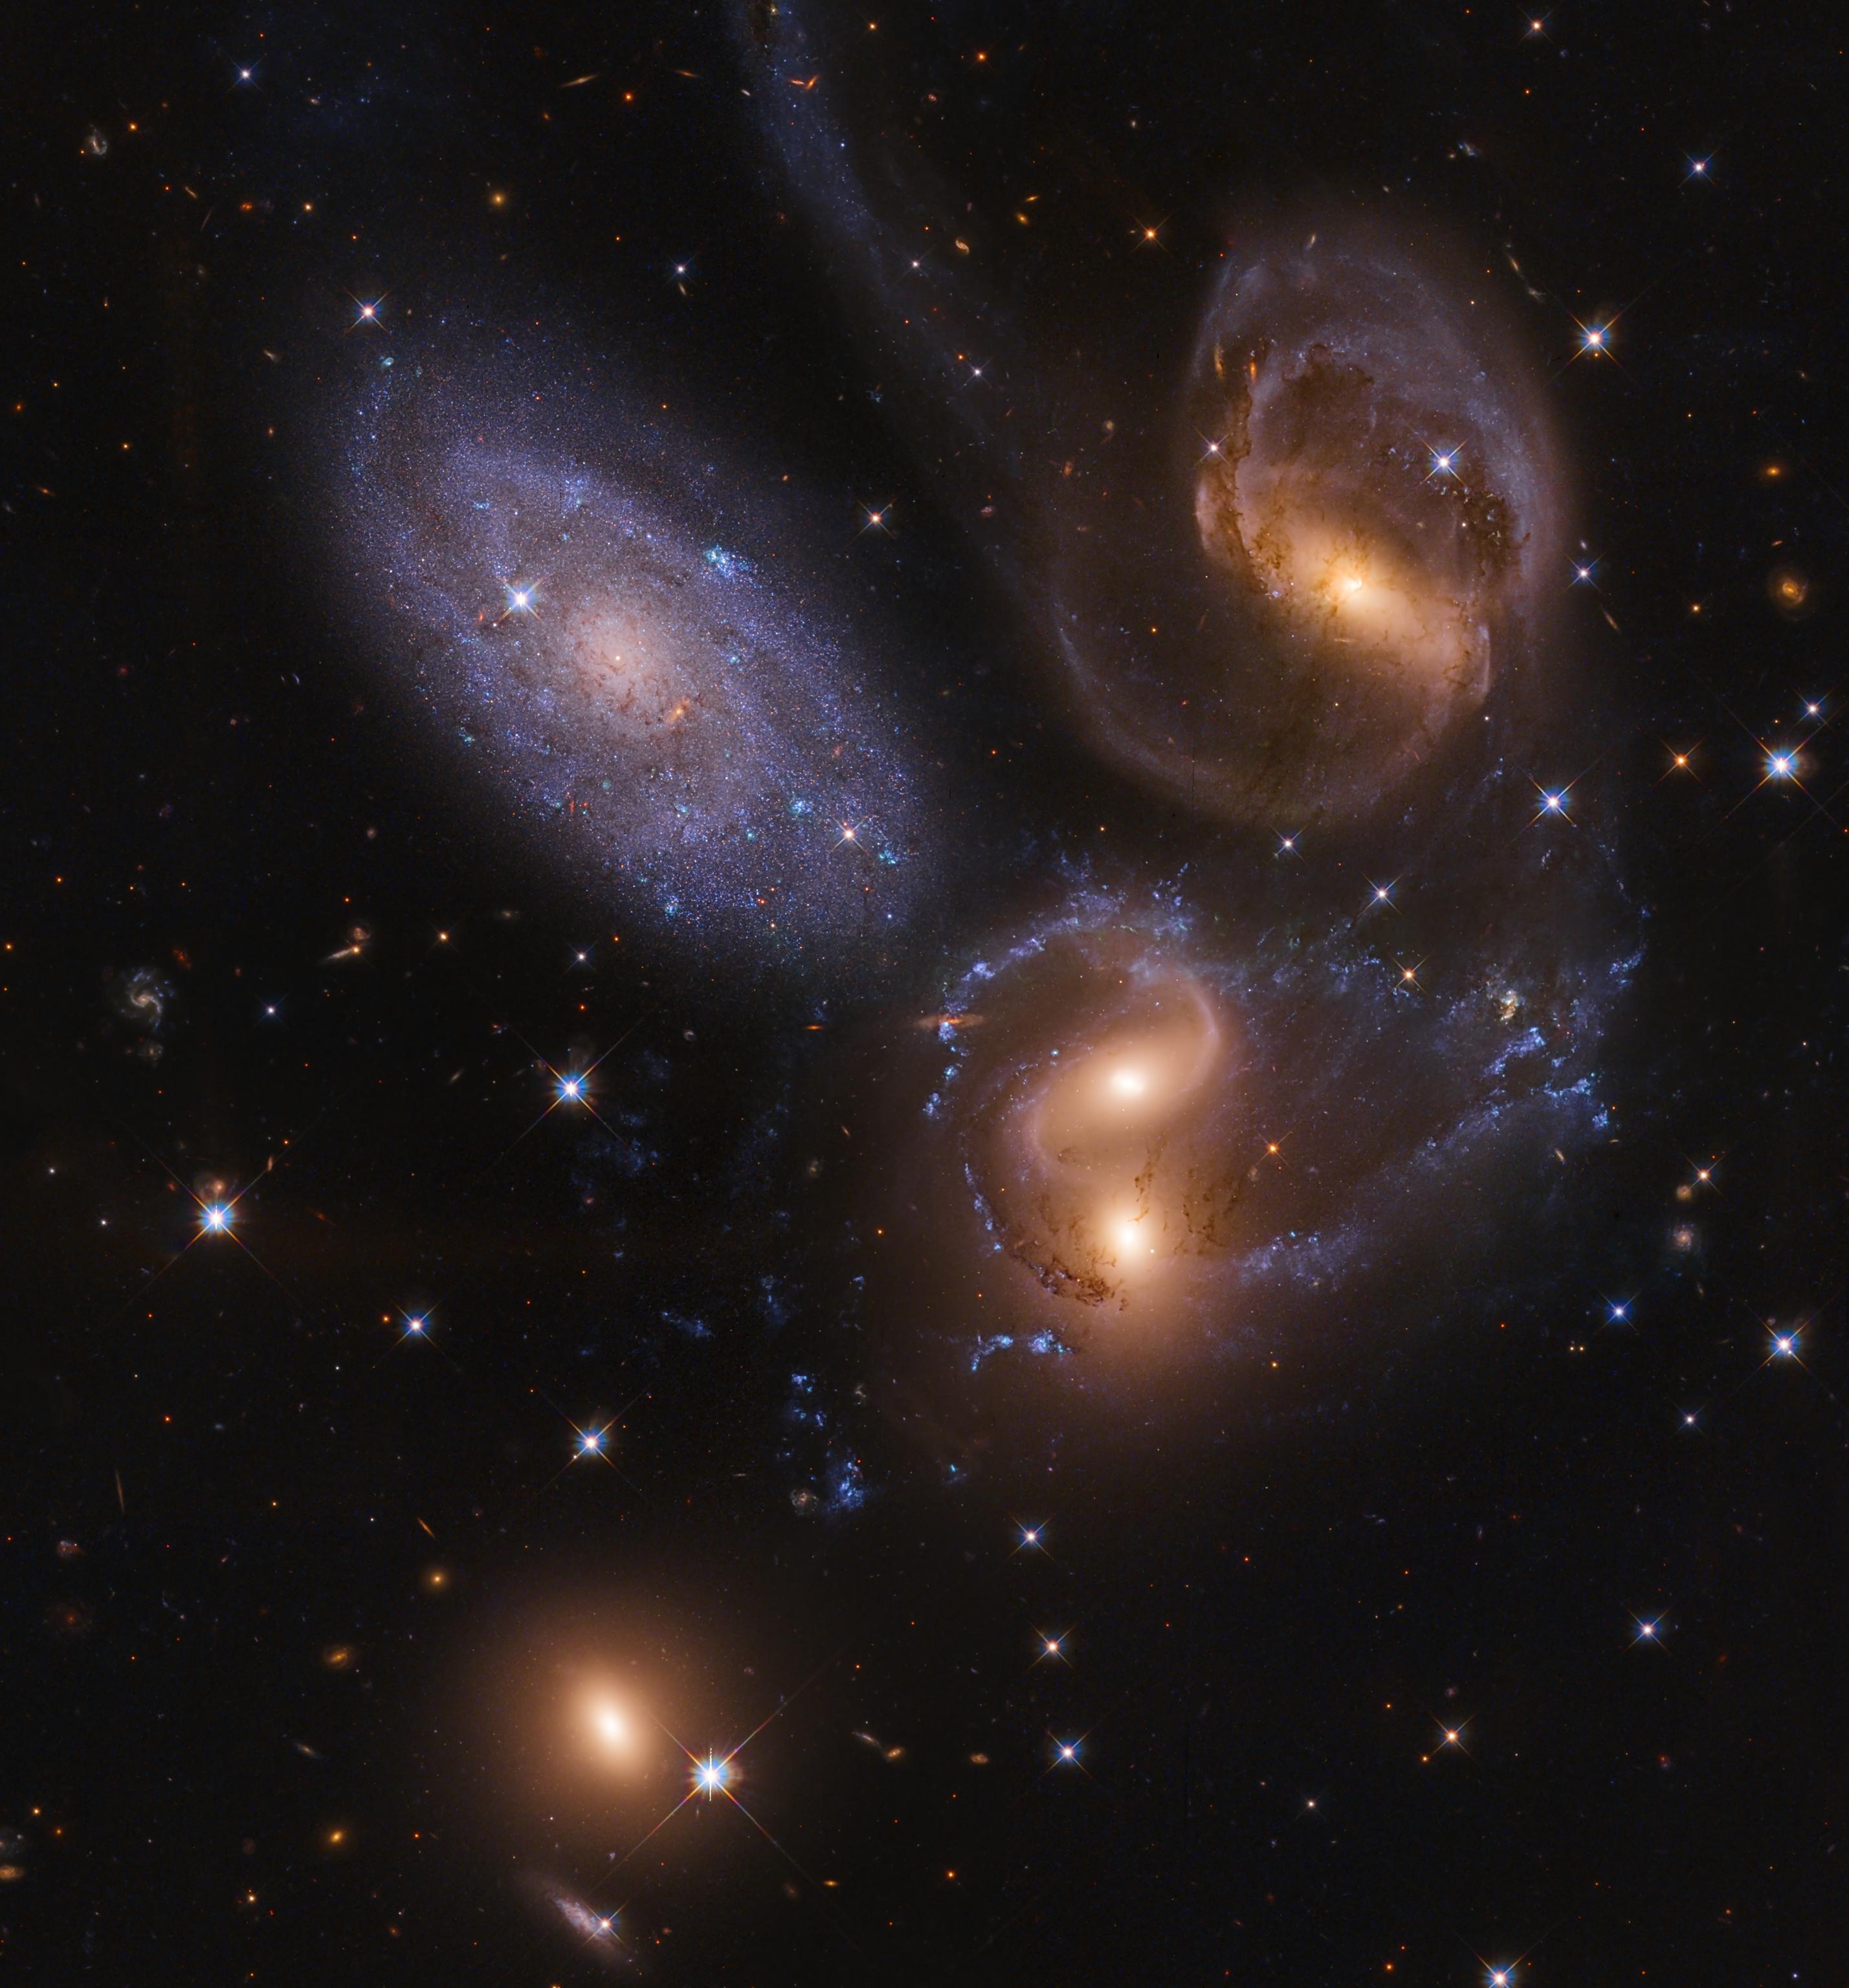 صورة أخّاذة للفضاء العميق تظهر عدداً من المجرّات بعضها ذو مسحة مصفرّة هي مجرّات بعيدة متفاعلة بينما هناك واحدة مزرقّة هي مجرّة أقرب. تتناثر نجوم المقدّمة المدبّبة على امتداد الصورة